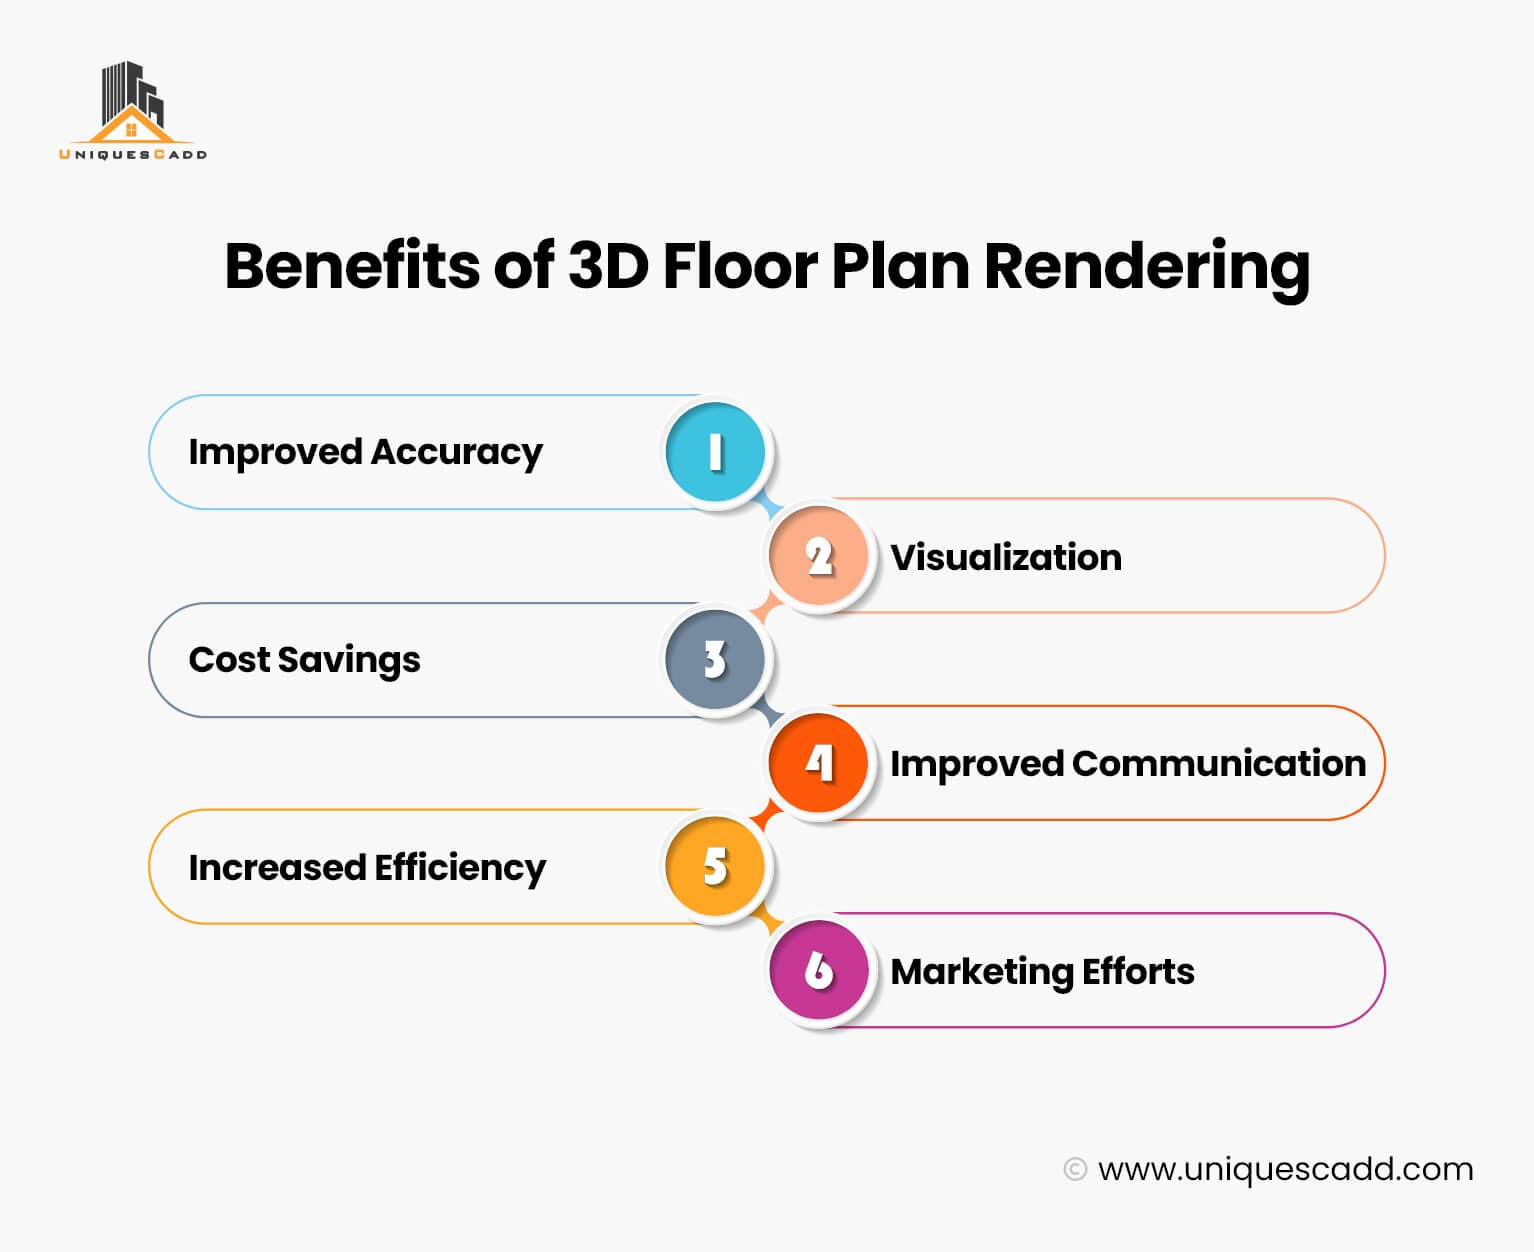 Benefits of 3D Floor Plan Rendering